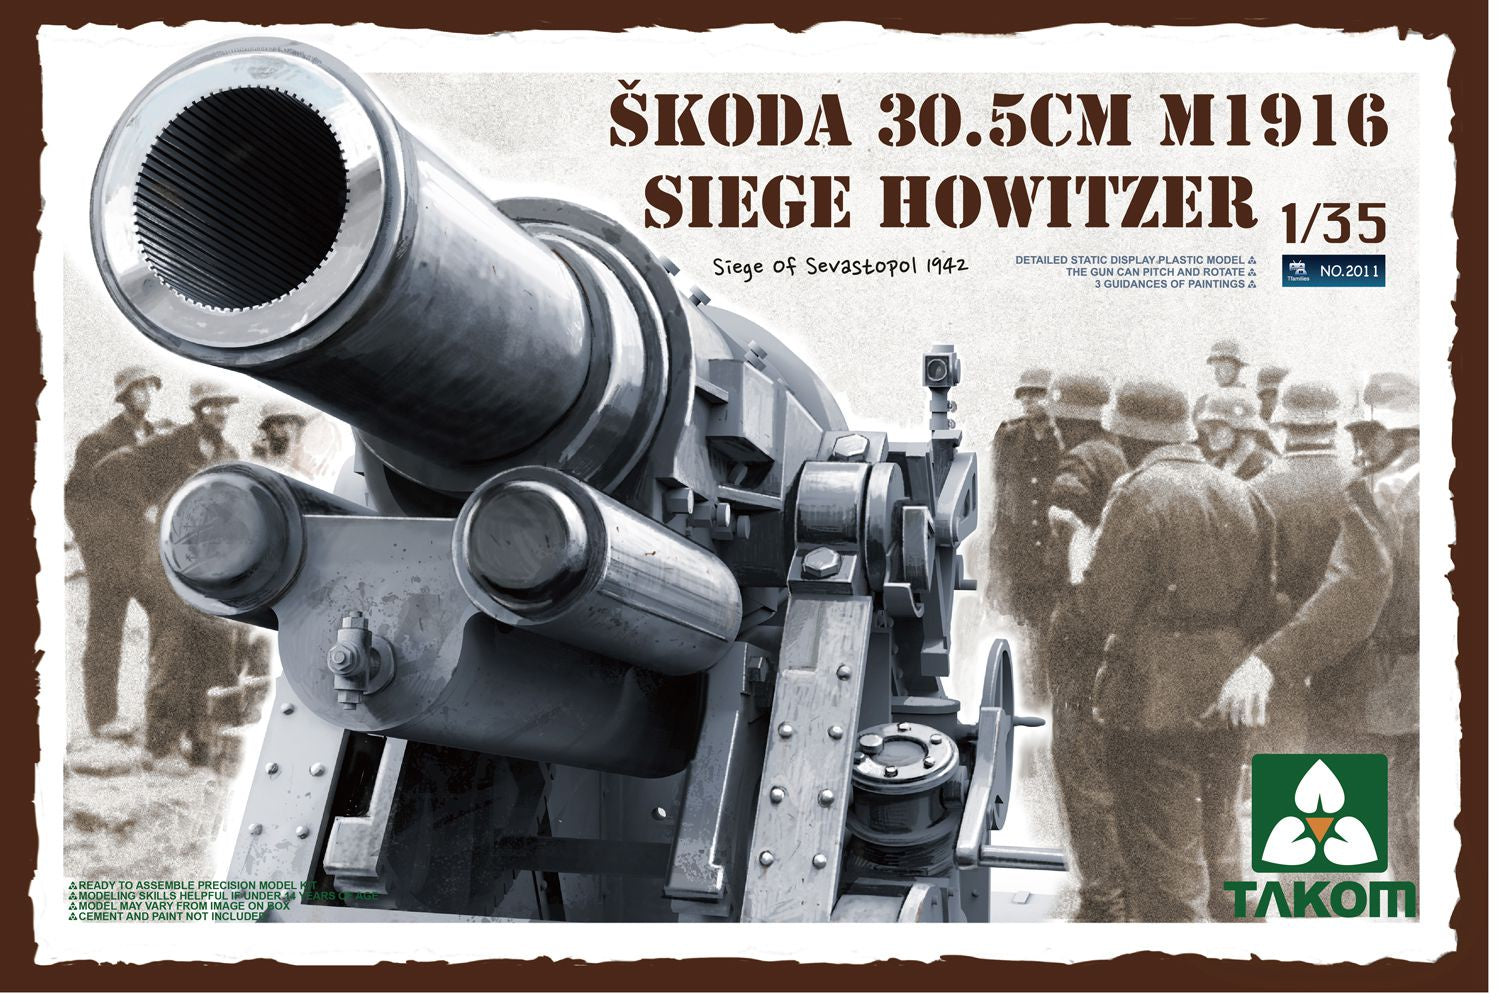 Skoda 30.5cm M1916 Siege Howitzer 1/35 #2011 by Takom